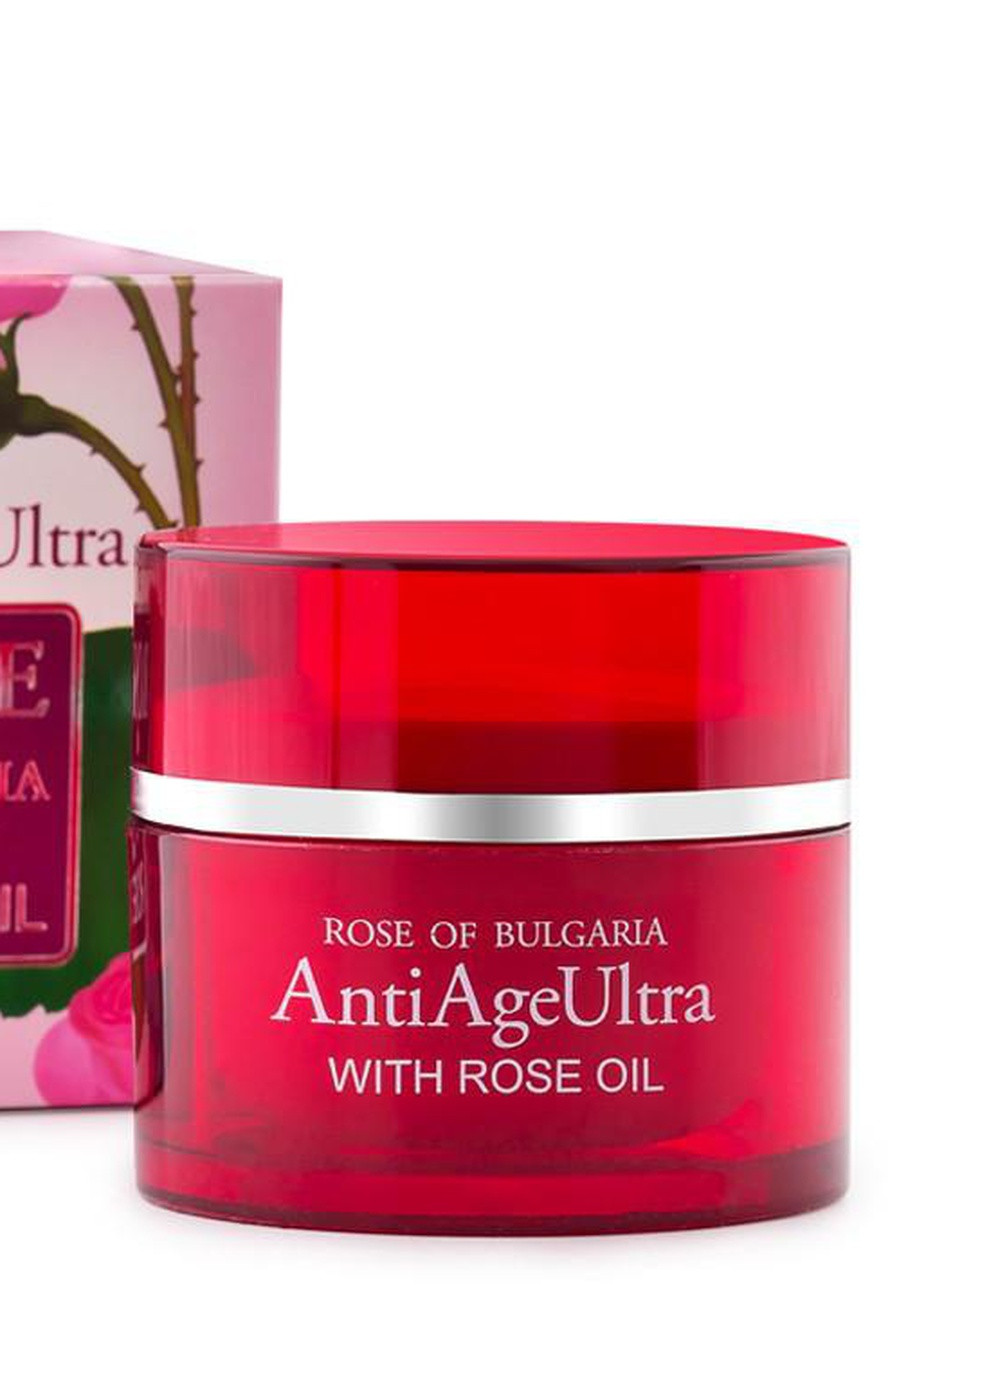 Ультраантивозрастной крем для лица с розовым маслом Anti Age Ultra Rose of Bulgaria от 50 мл Biofresh (253774345)